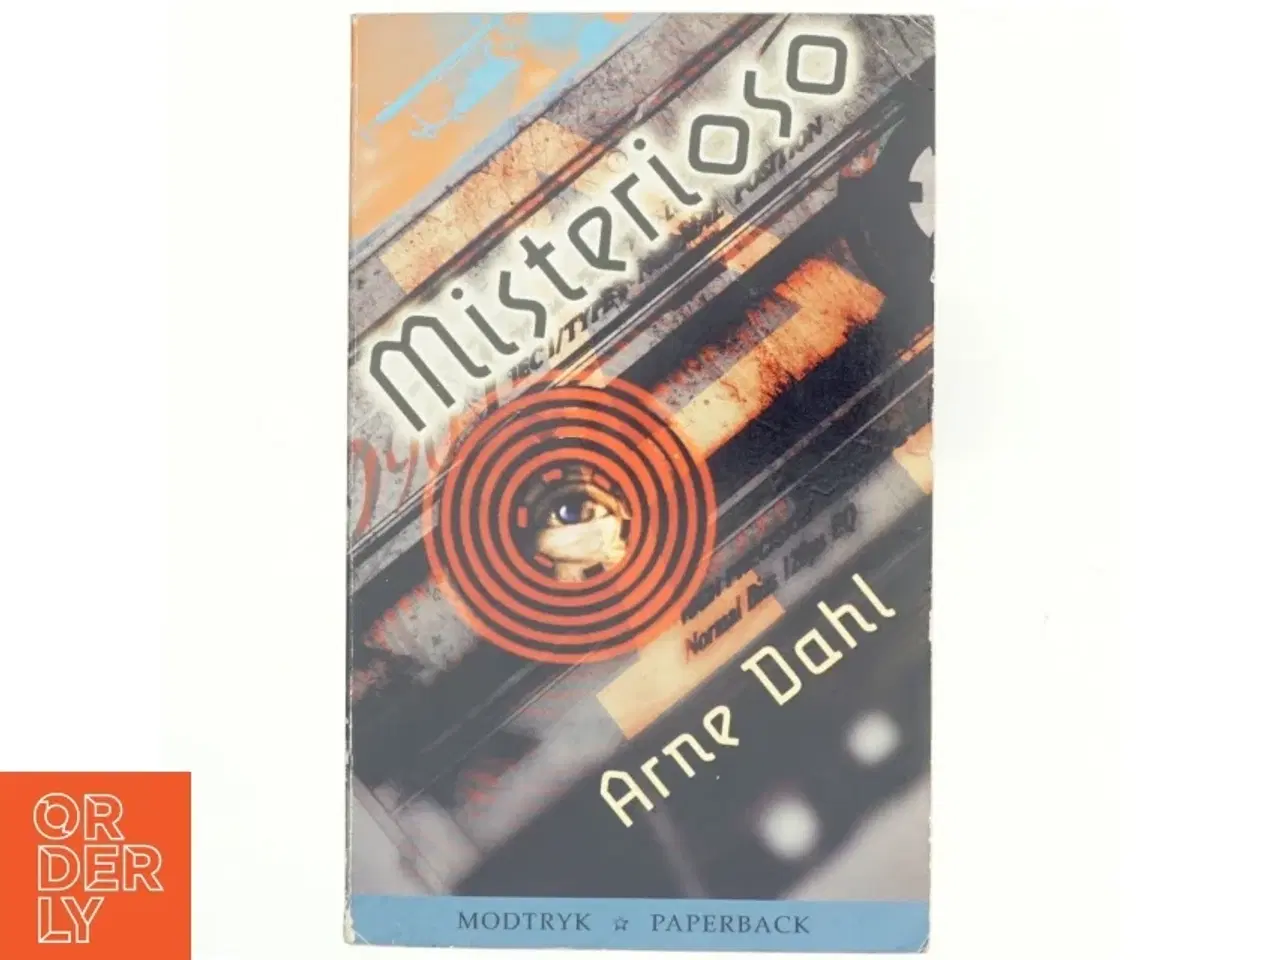 Billede 1 - Misterioso : kriminalroman af Arne Dahl (f. 1963) (Bog)